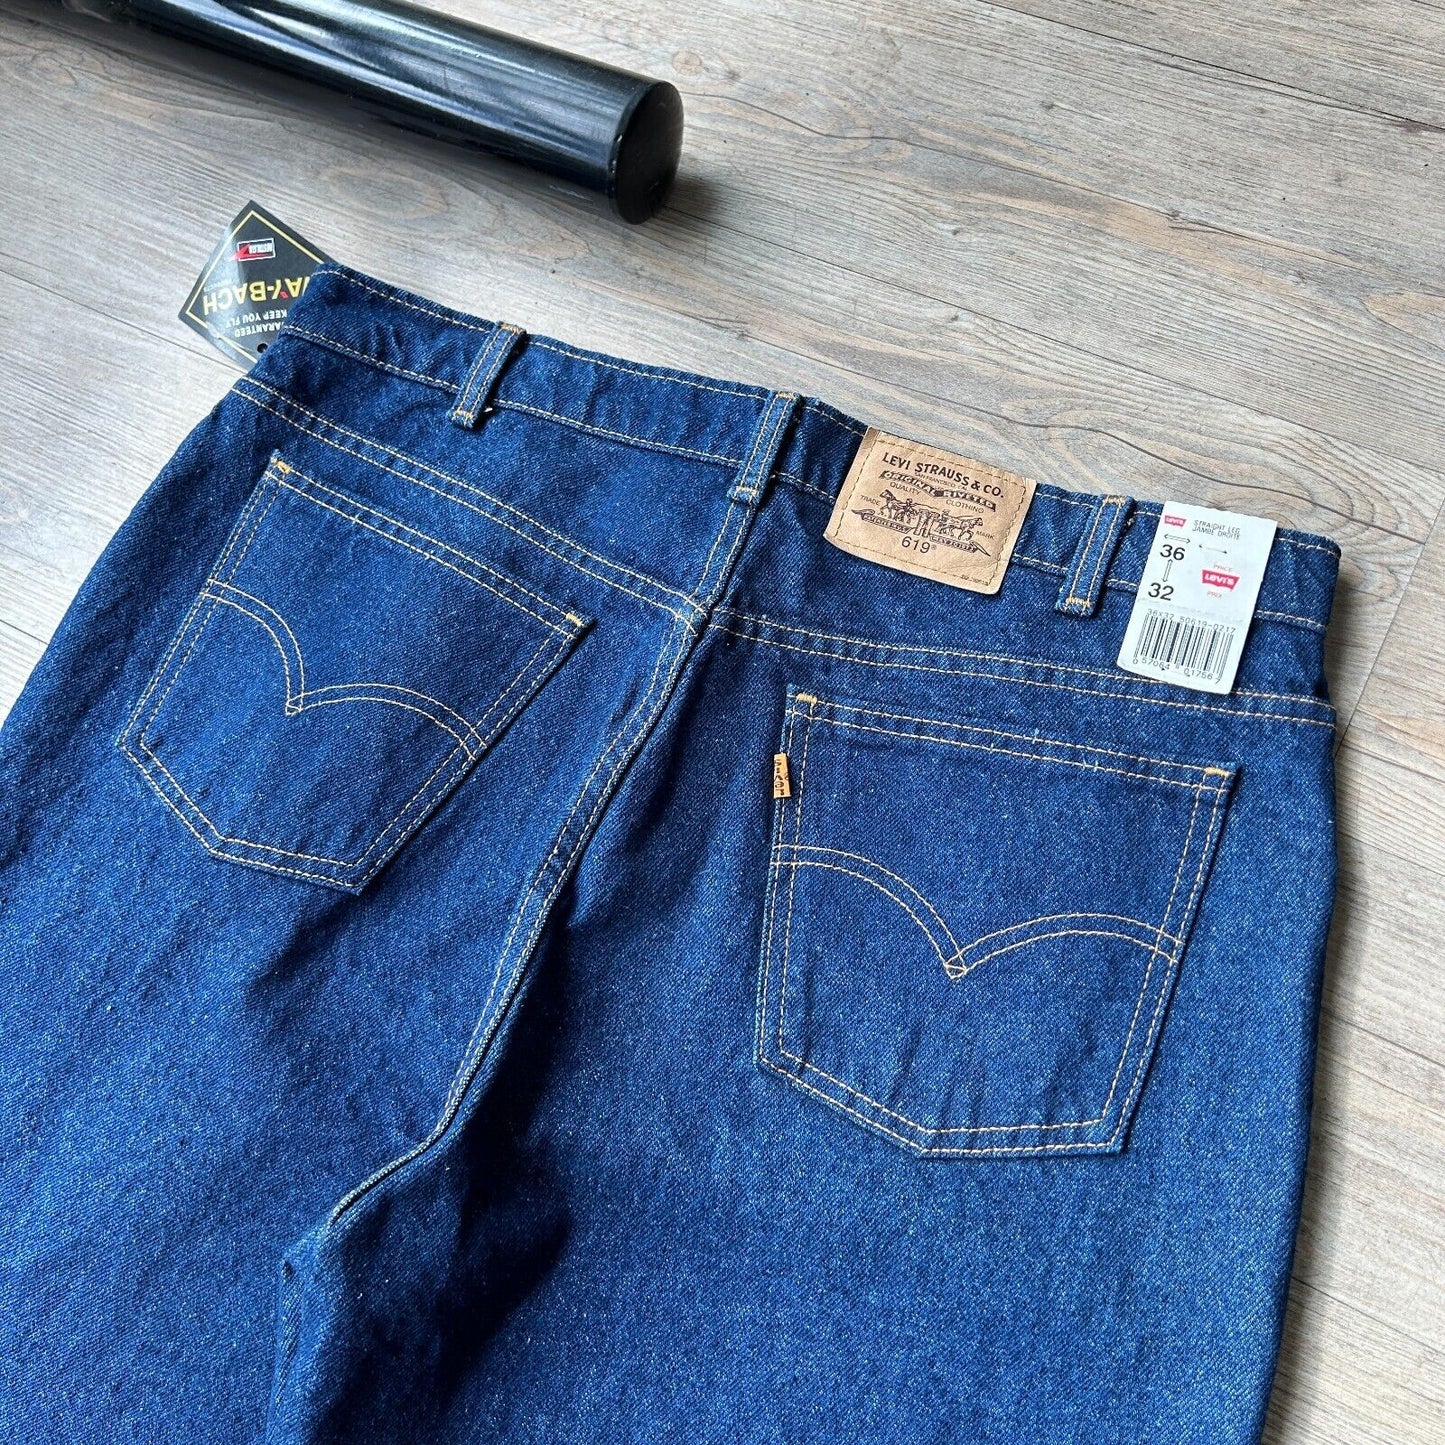 VINTAGE 90s | LEVIS 619 NWT* Dark Blue Jeans Pants sz W36 L32